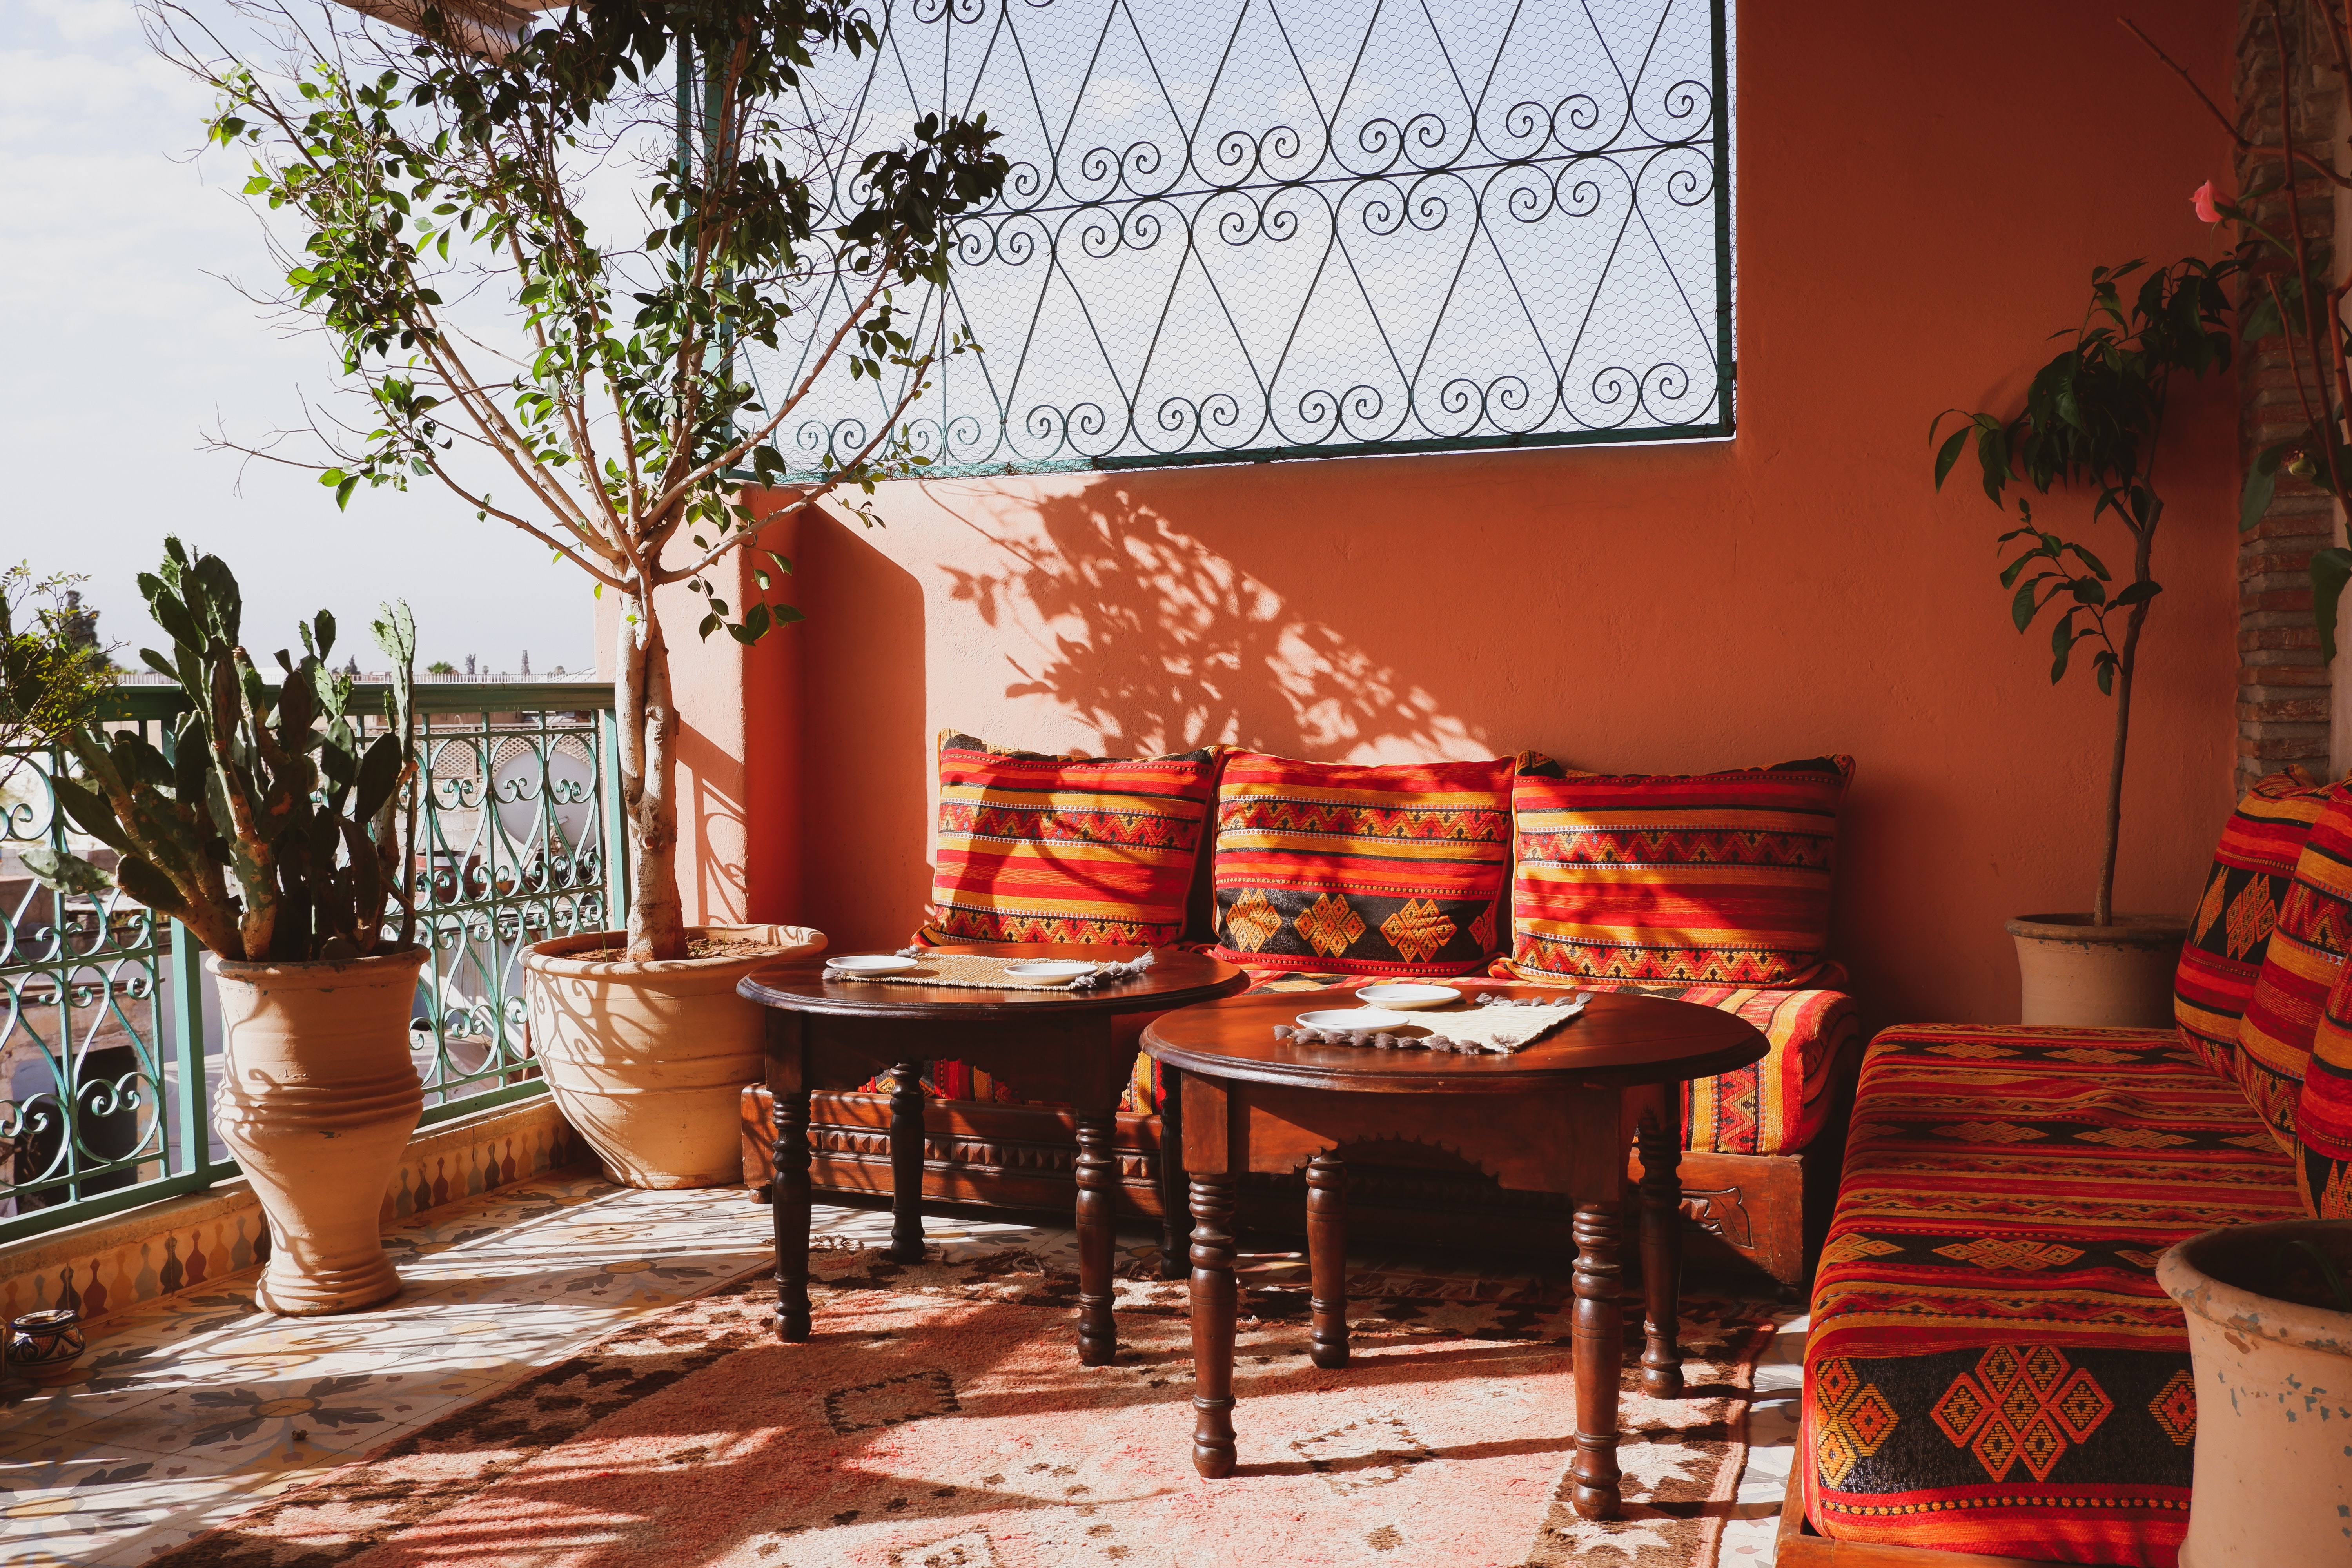 Rooftop bars and restaurants in Marrakech